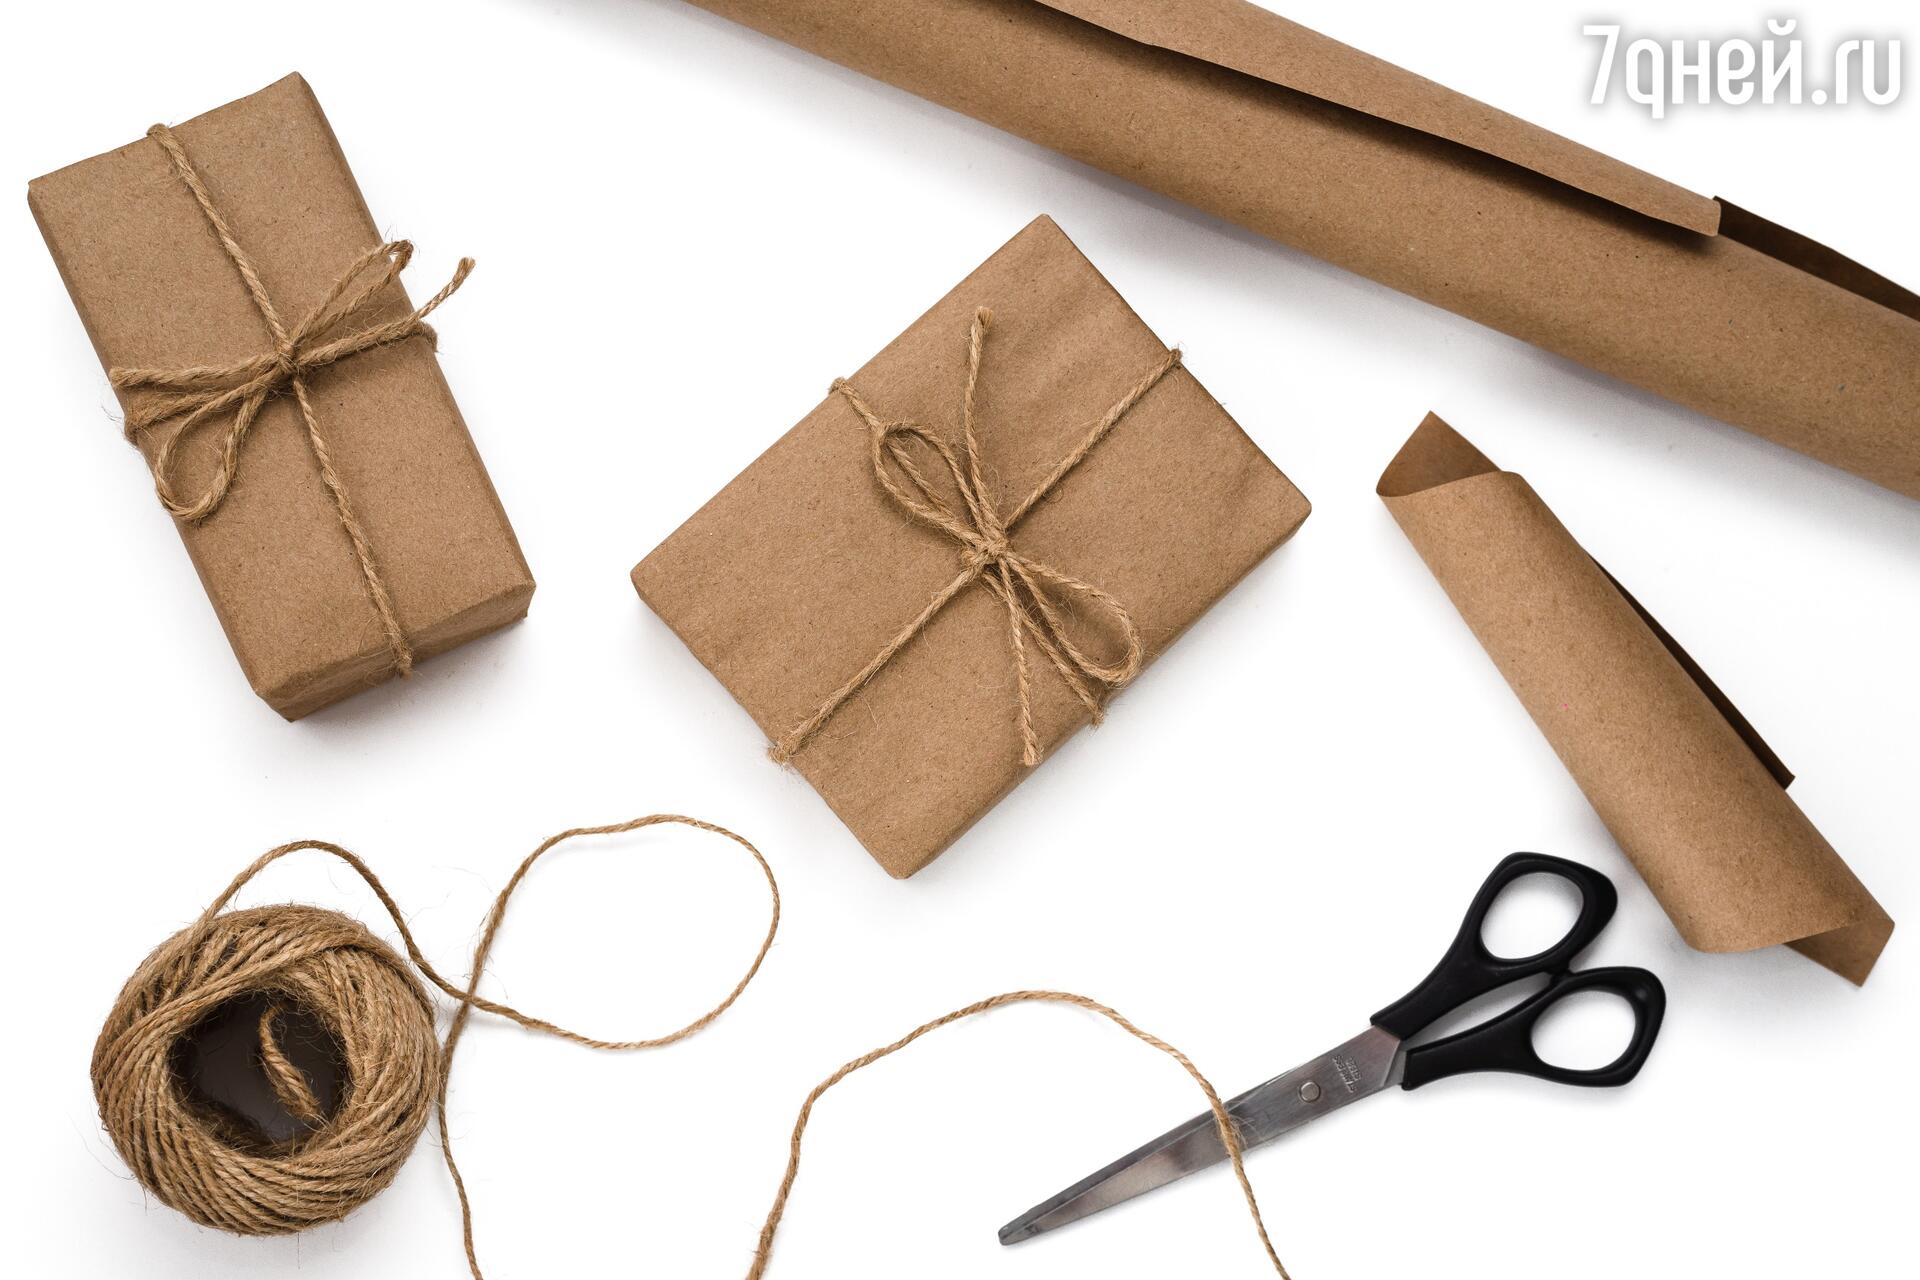 Как упаковать подарок своими руками. Упаковка подарка в коробку и подарочную бумагу